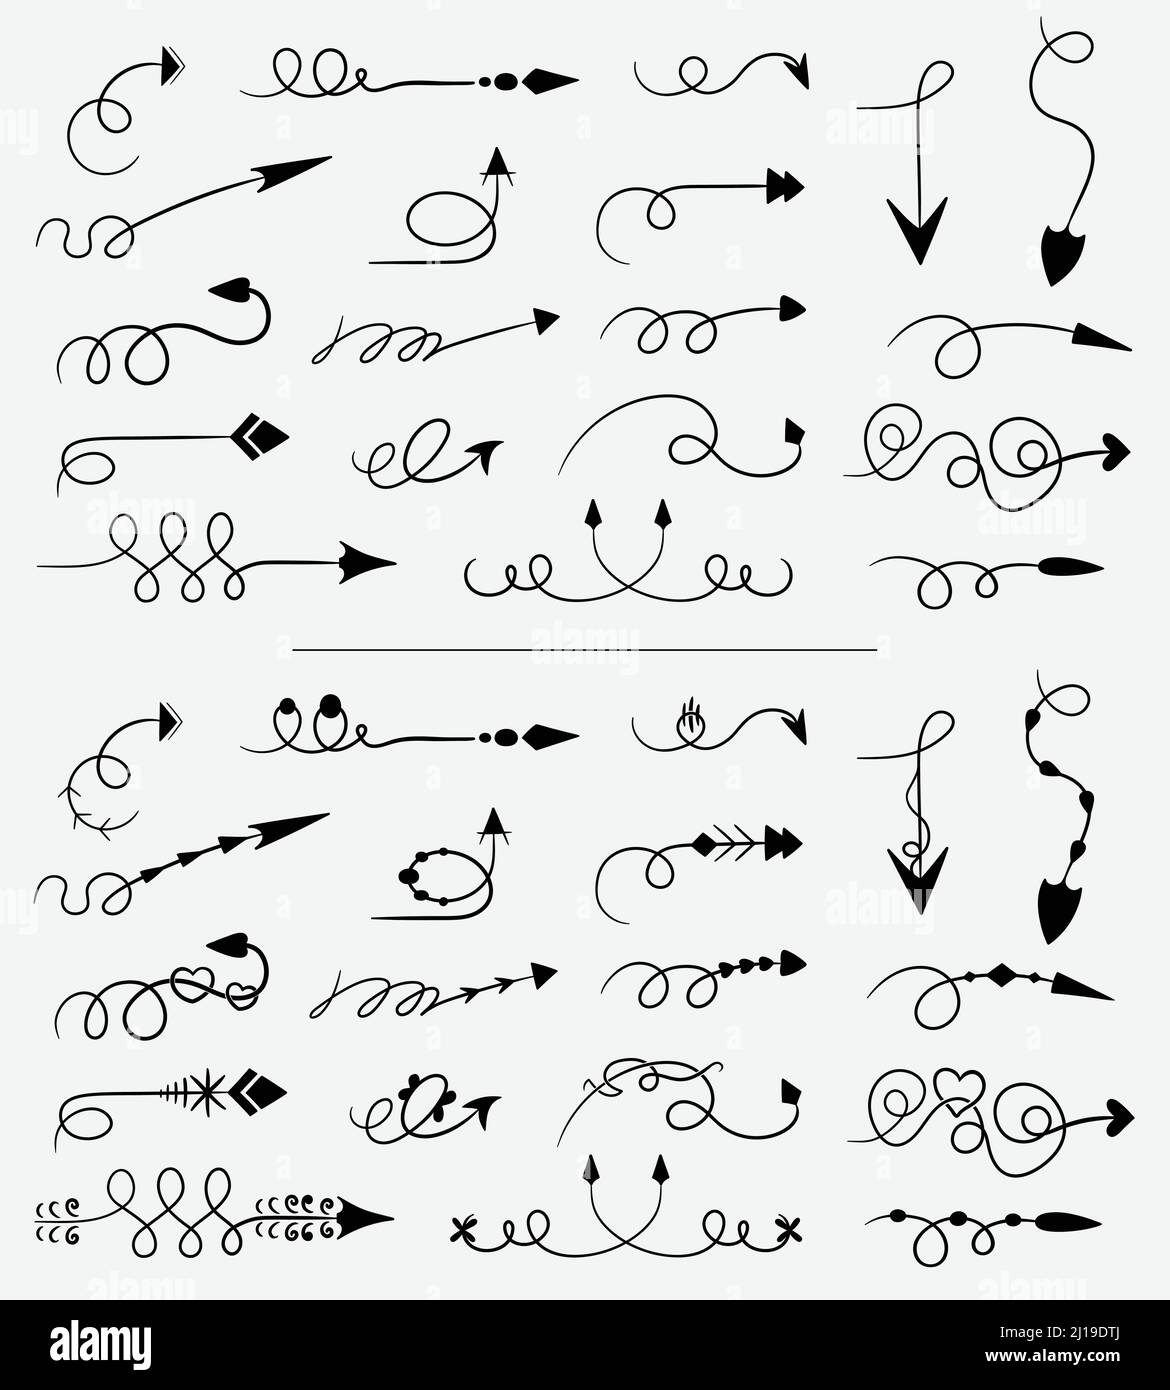 Set di frecce vettoriali, disegnate a mano, a forma di barbatella. Collezione di frecce decorate a vortice. Illustrazione Vettoriale